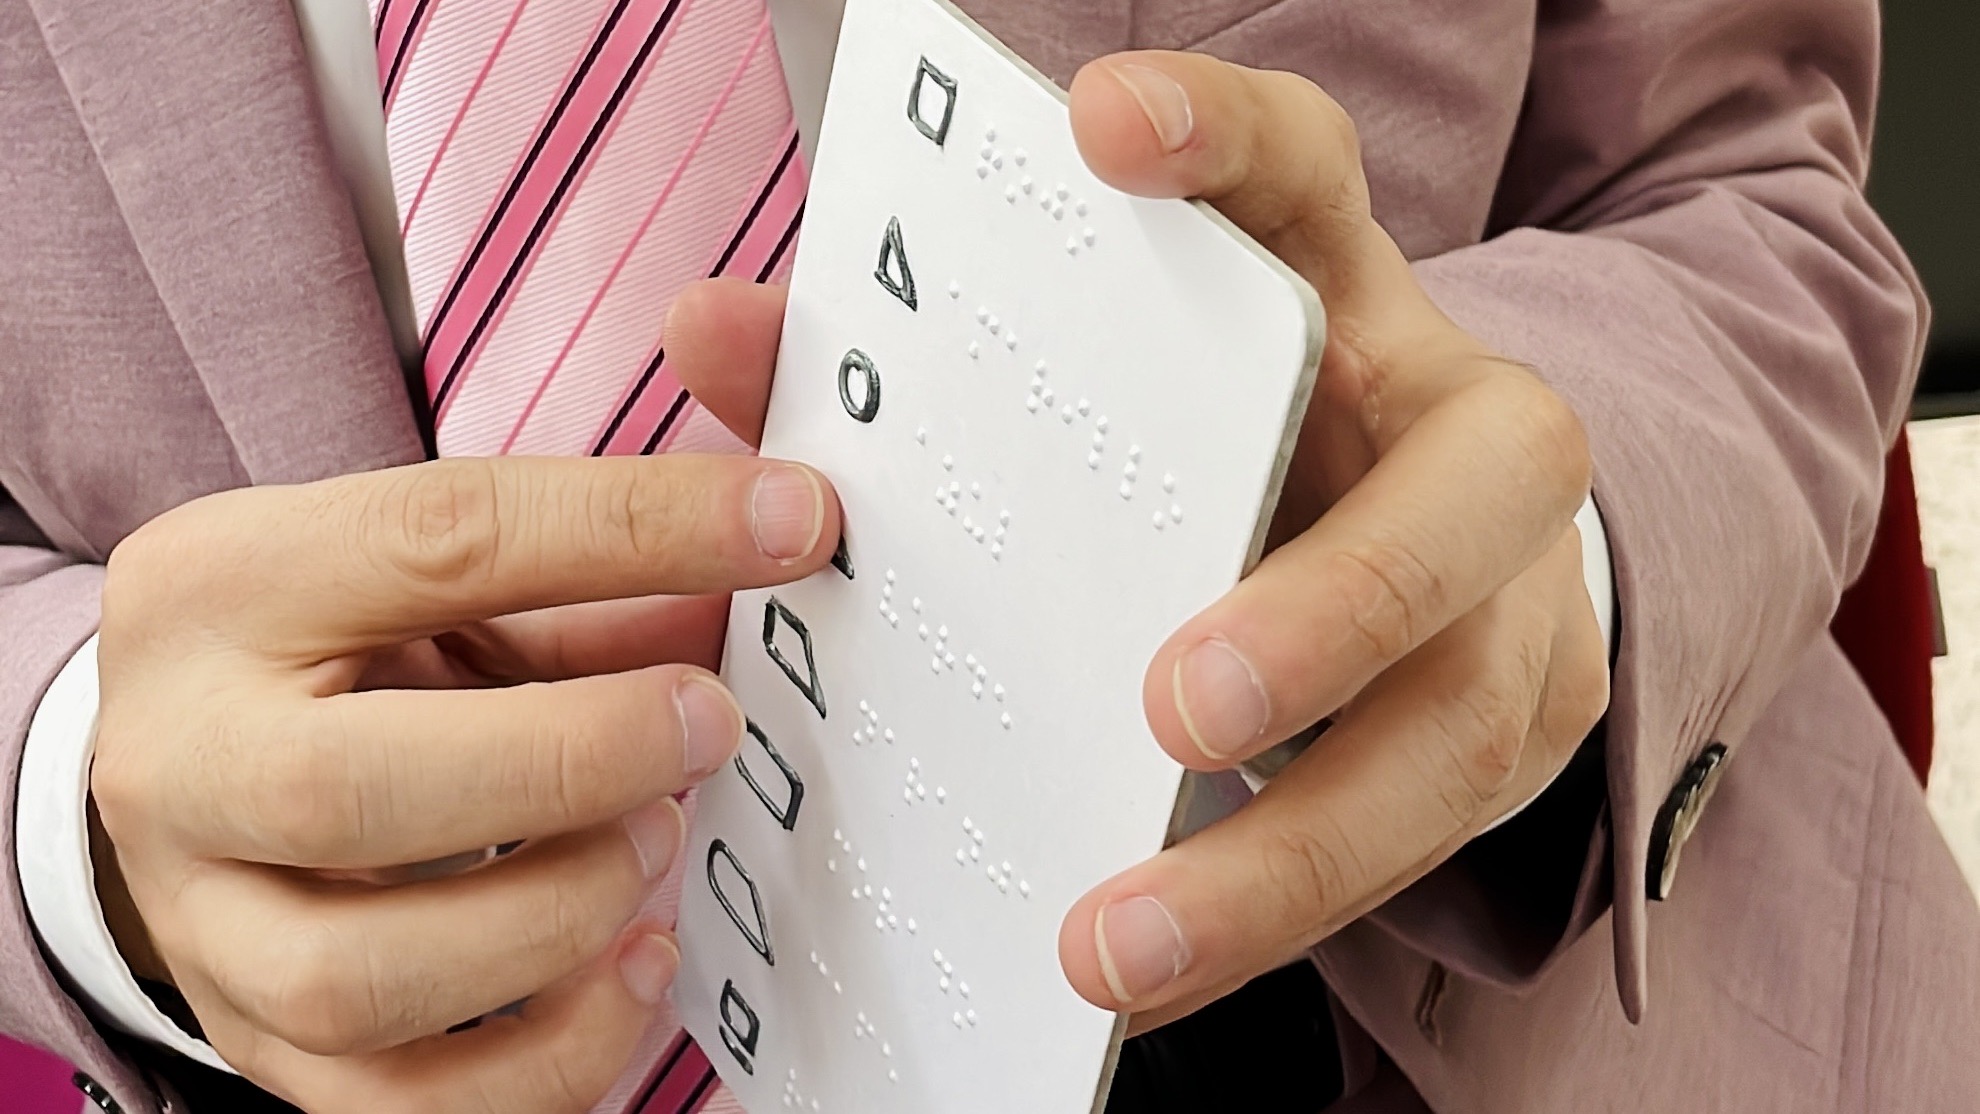 Fotografía de las manos de una persona con discapacidad visual tocando una tarjeta vertical con información en braille y una serie de figuras geométricas que representan colores.